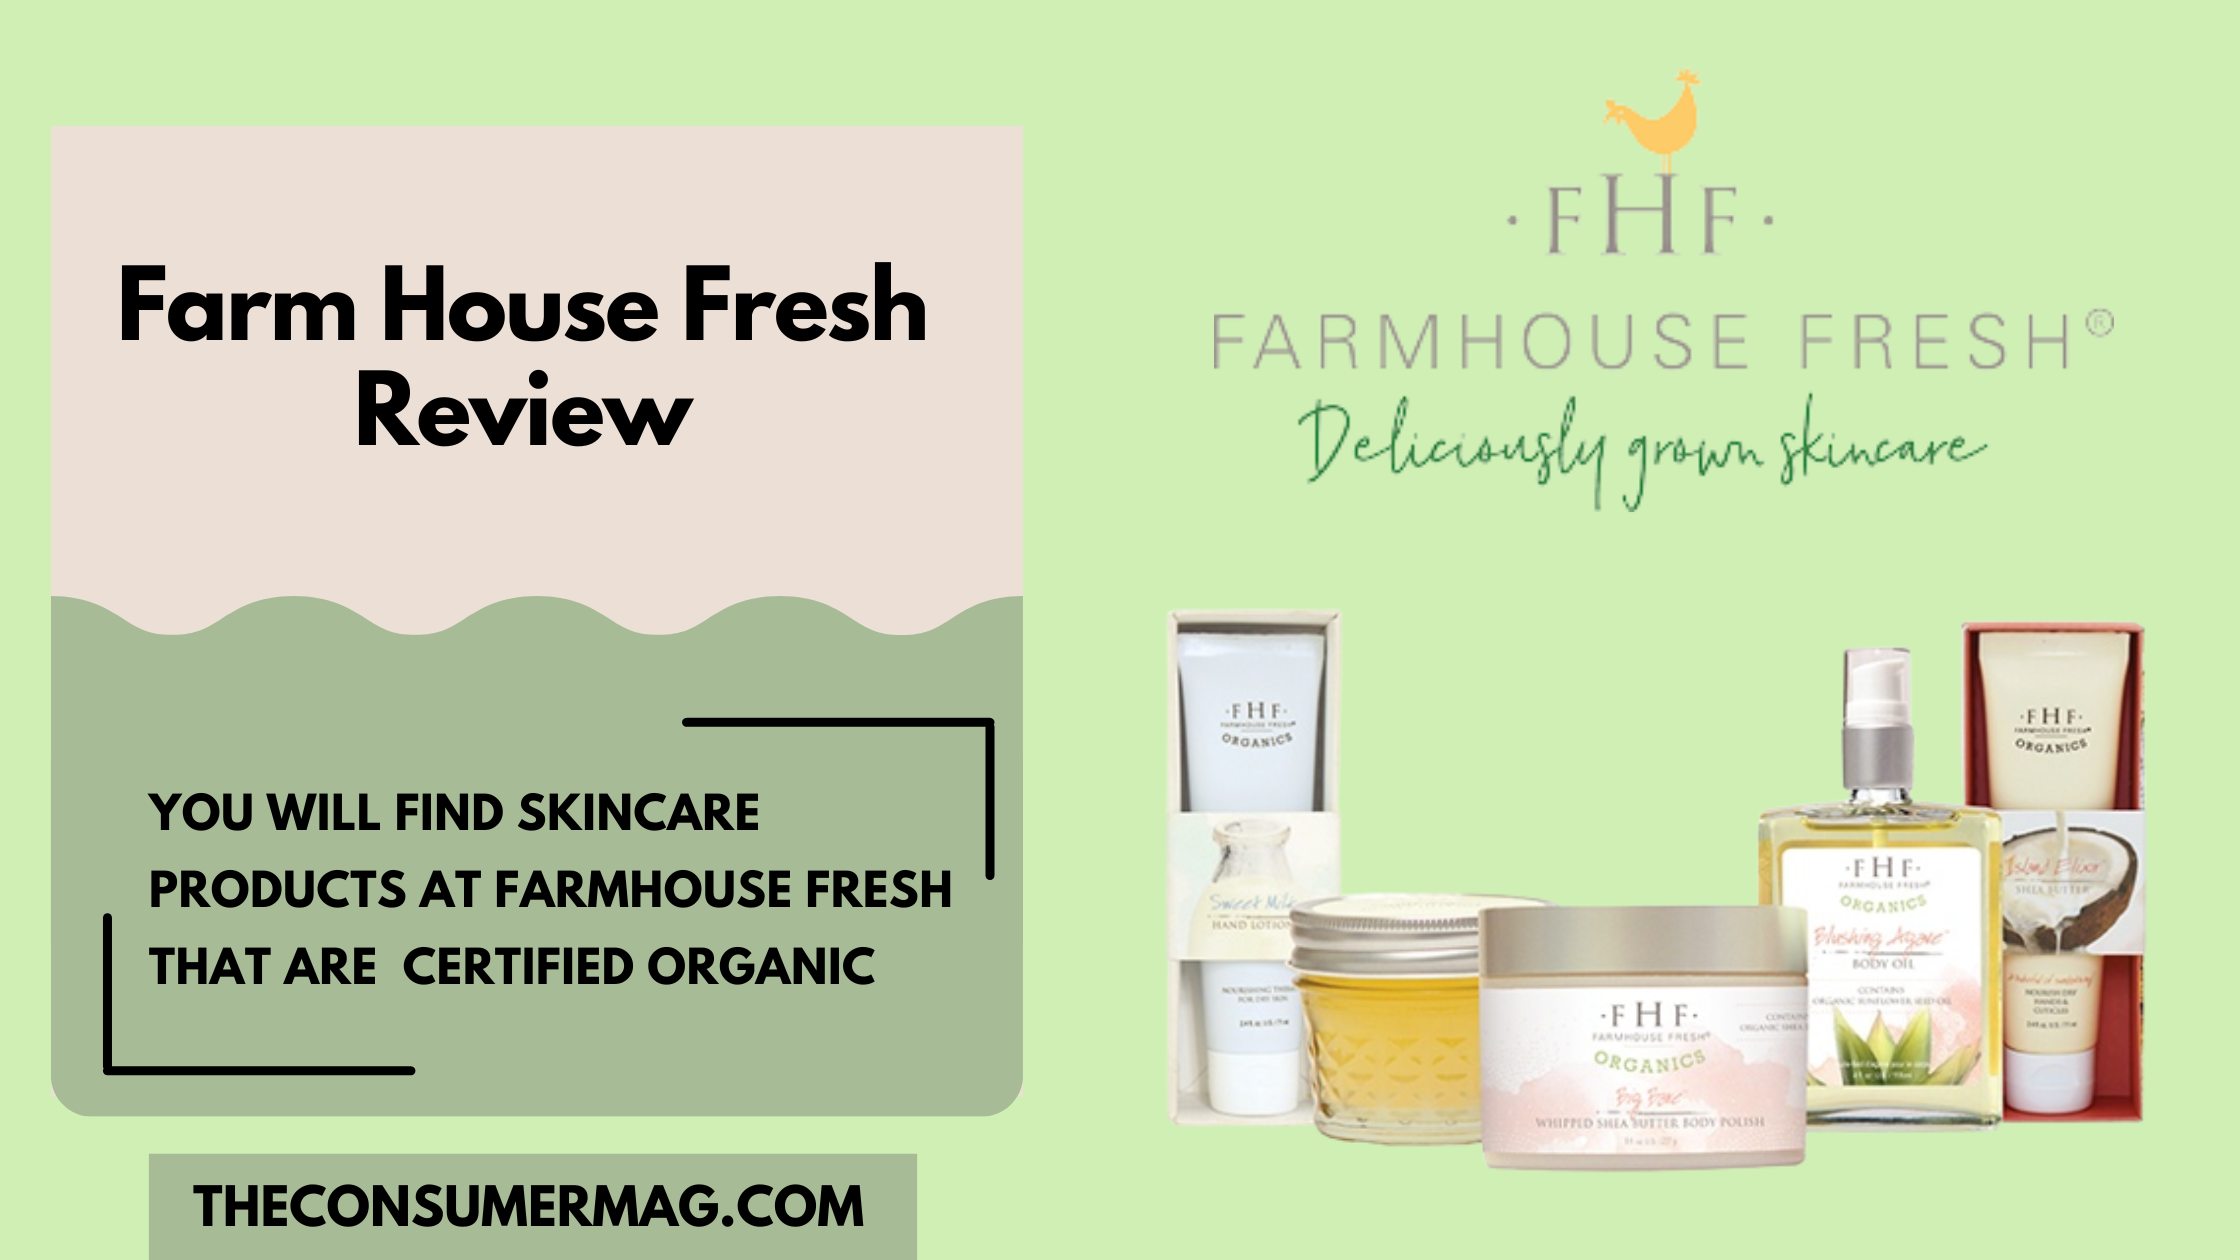 Farmhouse Fresh featured image